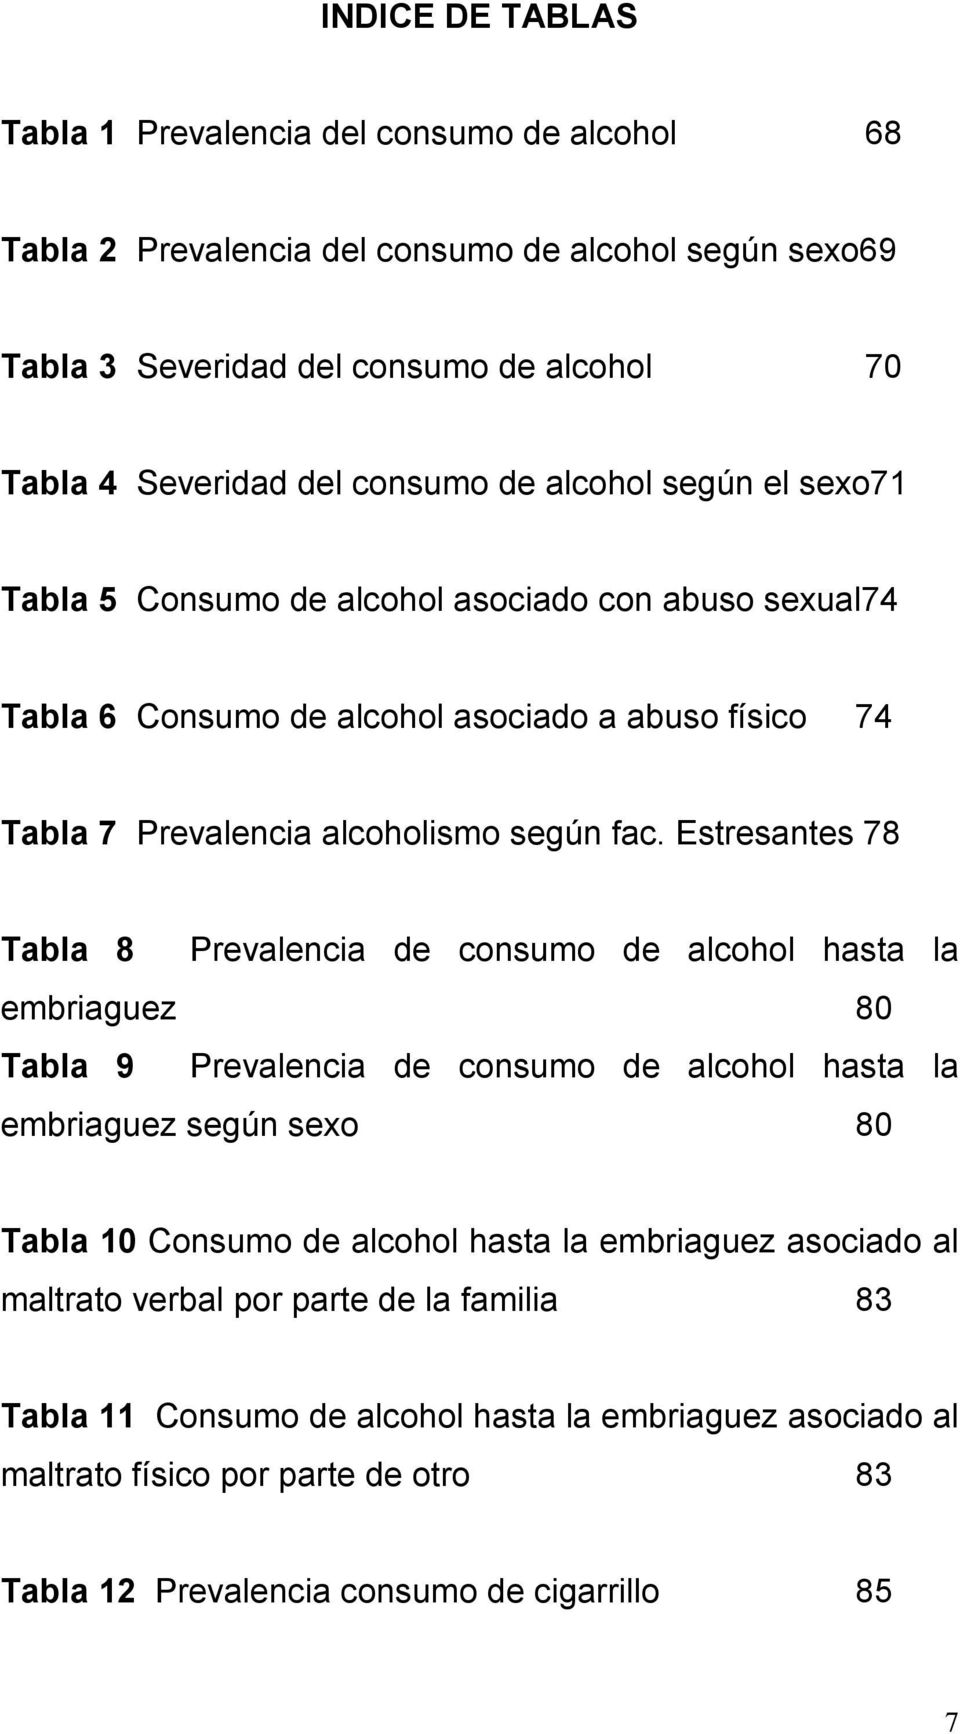 Estresantes 78 Tabla 8 Prevalencia de consumo de alcohol hasta la embriaguez 80 Tabla 9 Prevalencia de consumo de alcohol hasta la embriaguez según sexo 80 Tabla 10 Consumo de alcohol hasta la